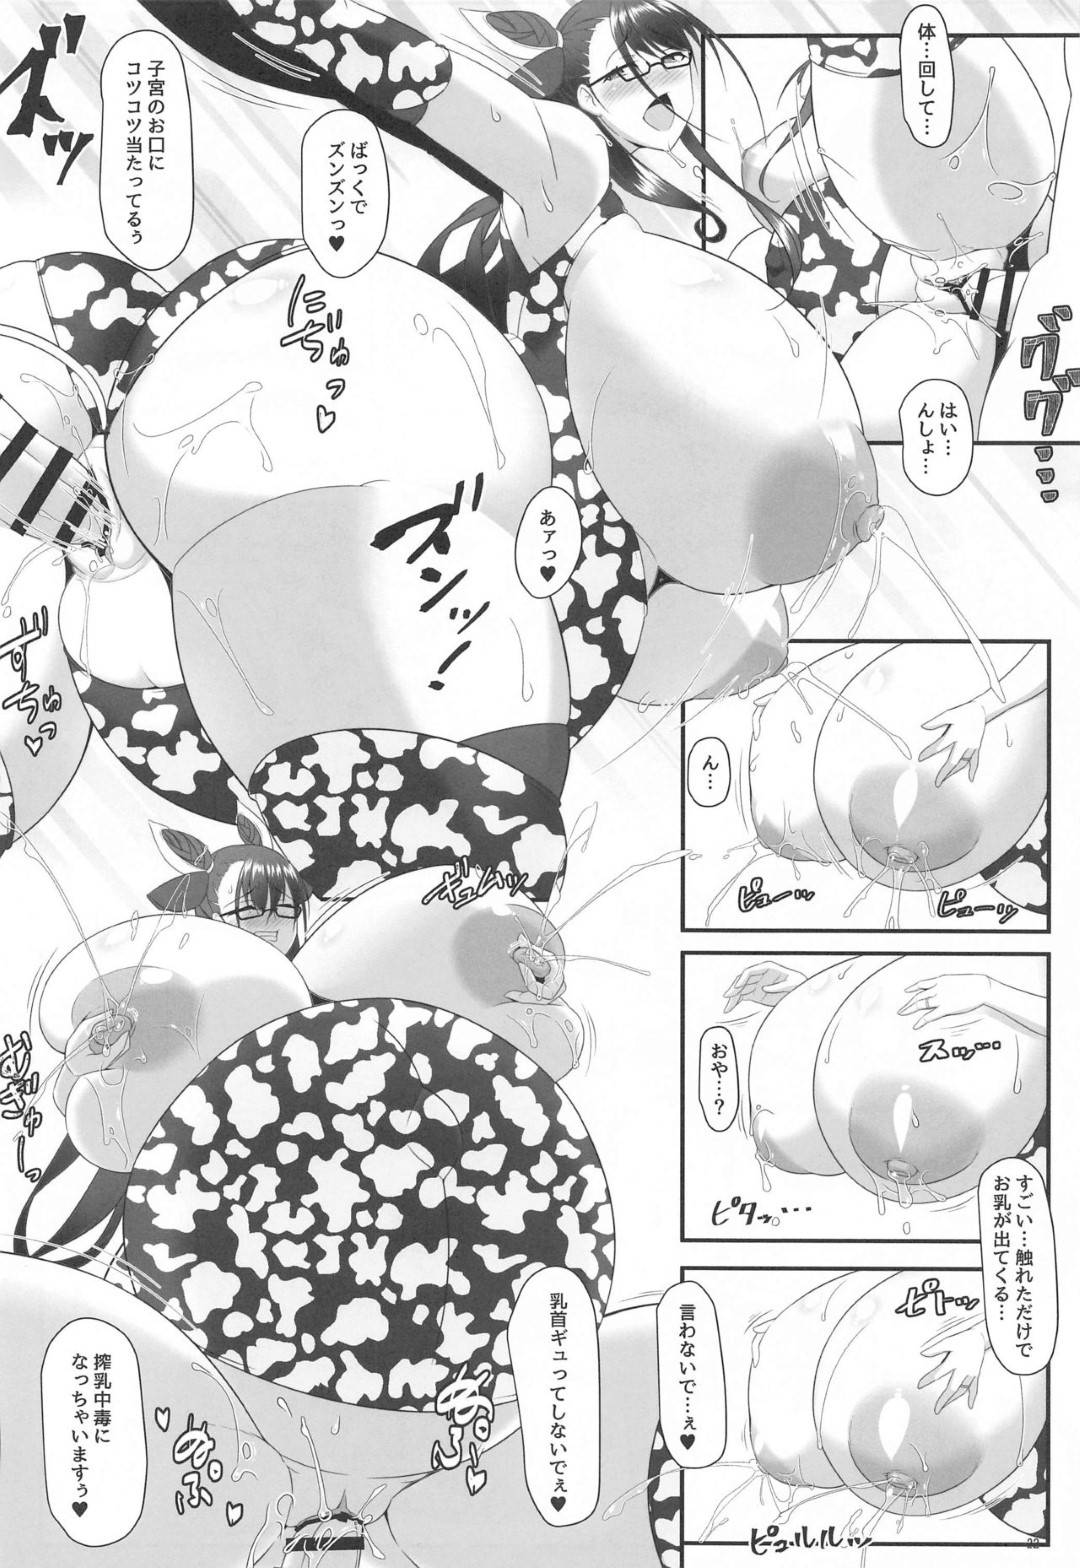 【エロ漫画】エロ同人を描いているマスターと妊娠中に式部はアイデア出しと称してエッチな事をしまくる【テツビレ】